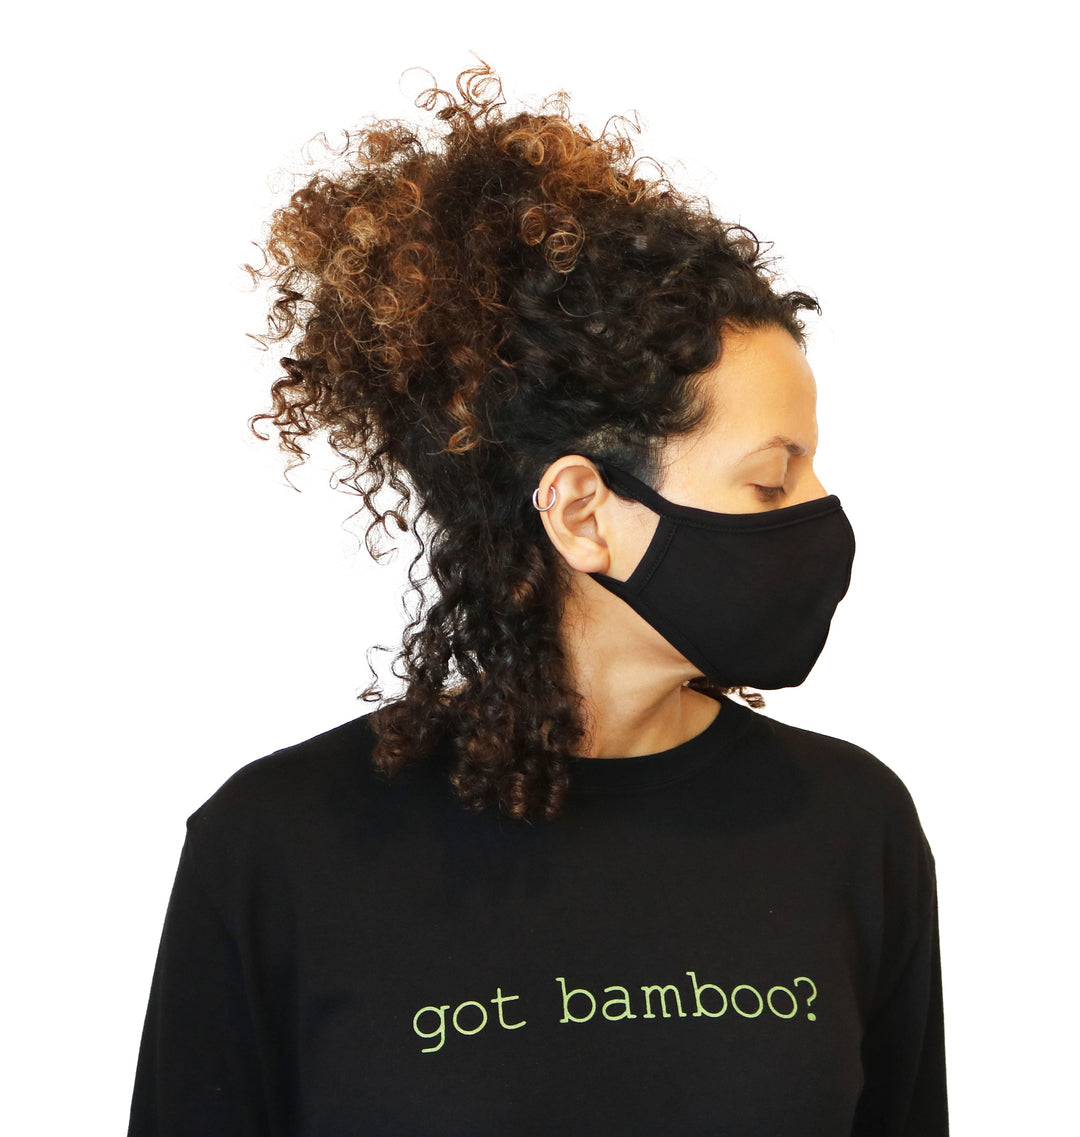 Spun Bamboo Breathable Face-Mask - Natural, Silky Soft, Ultra Comfortable - Spun Bamboo